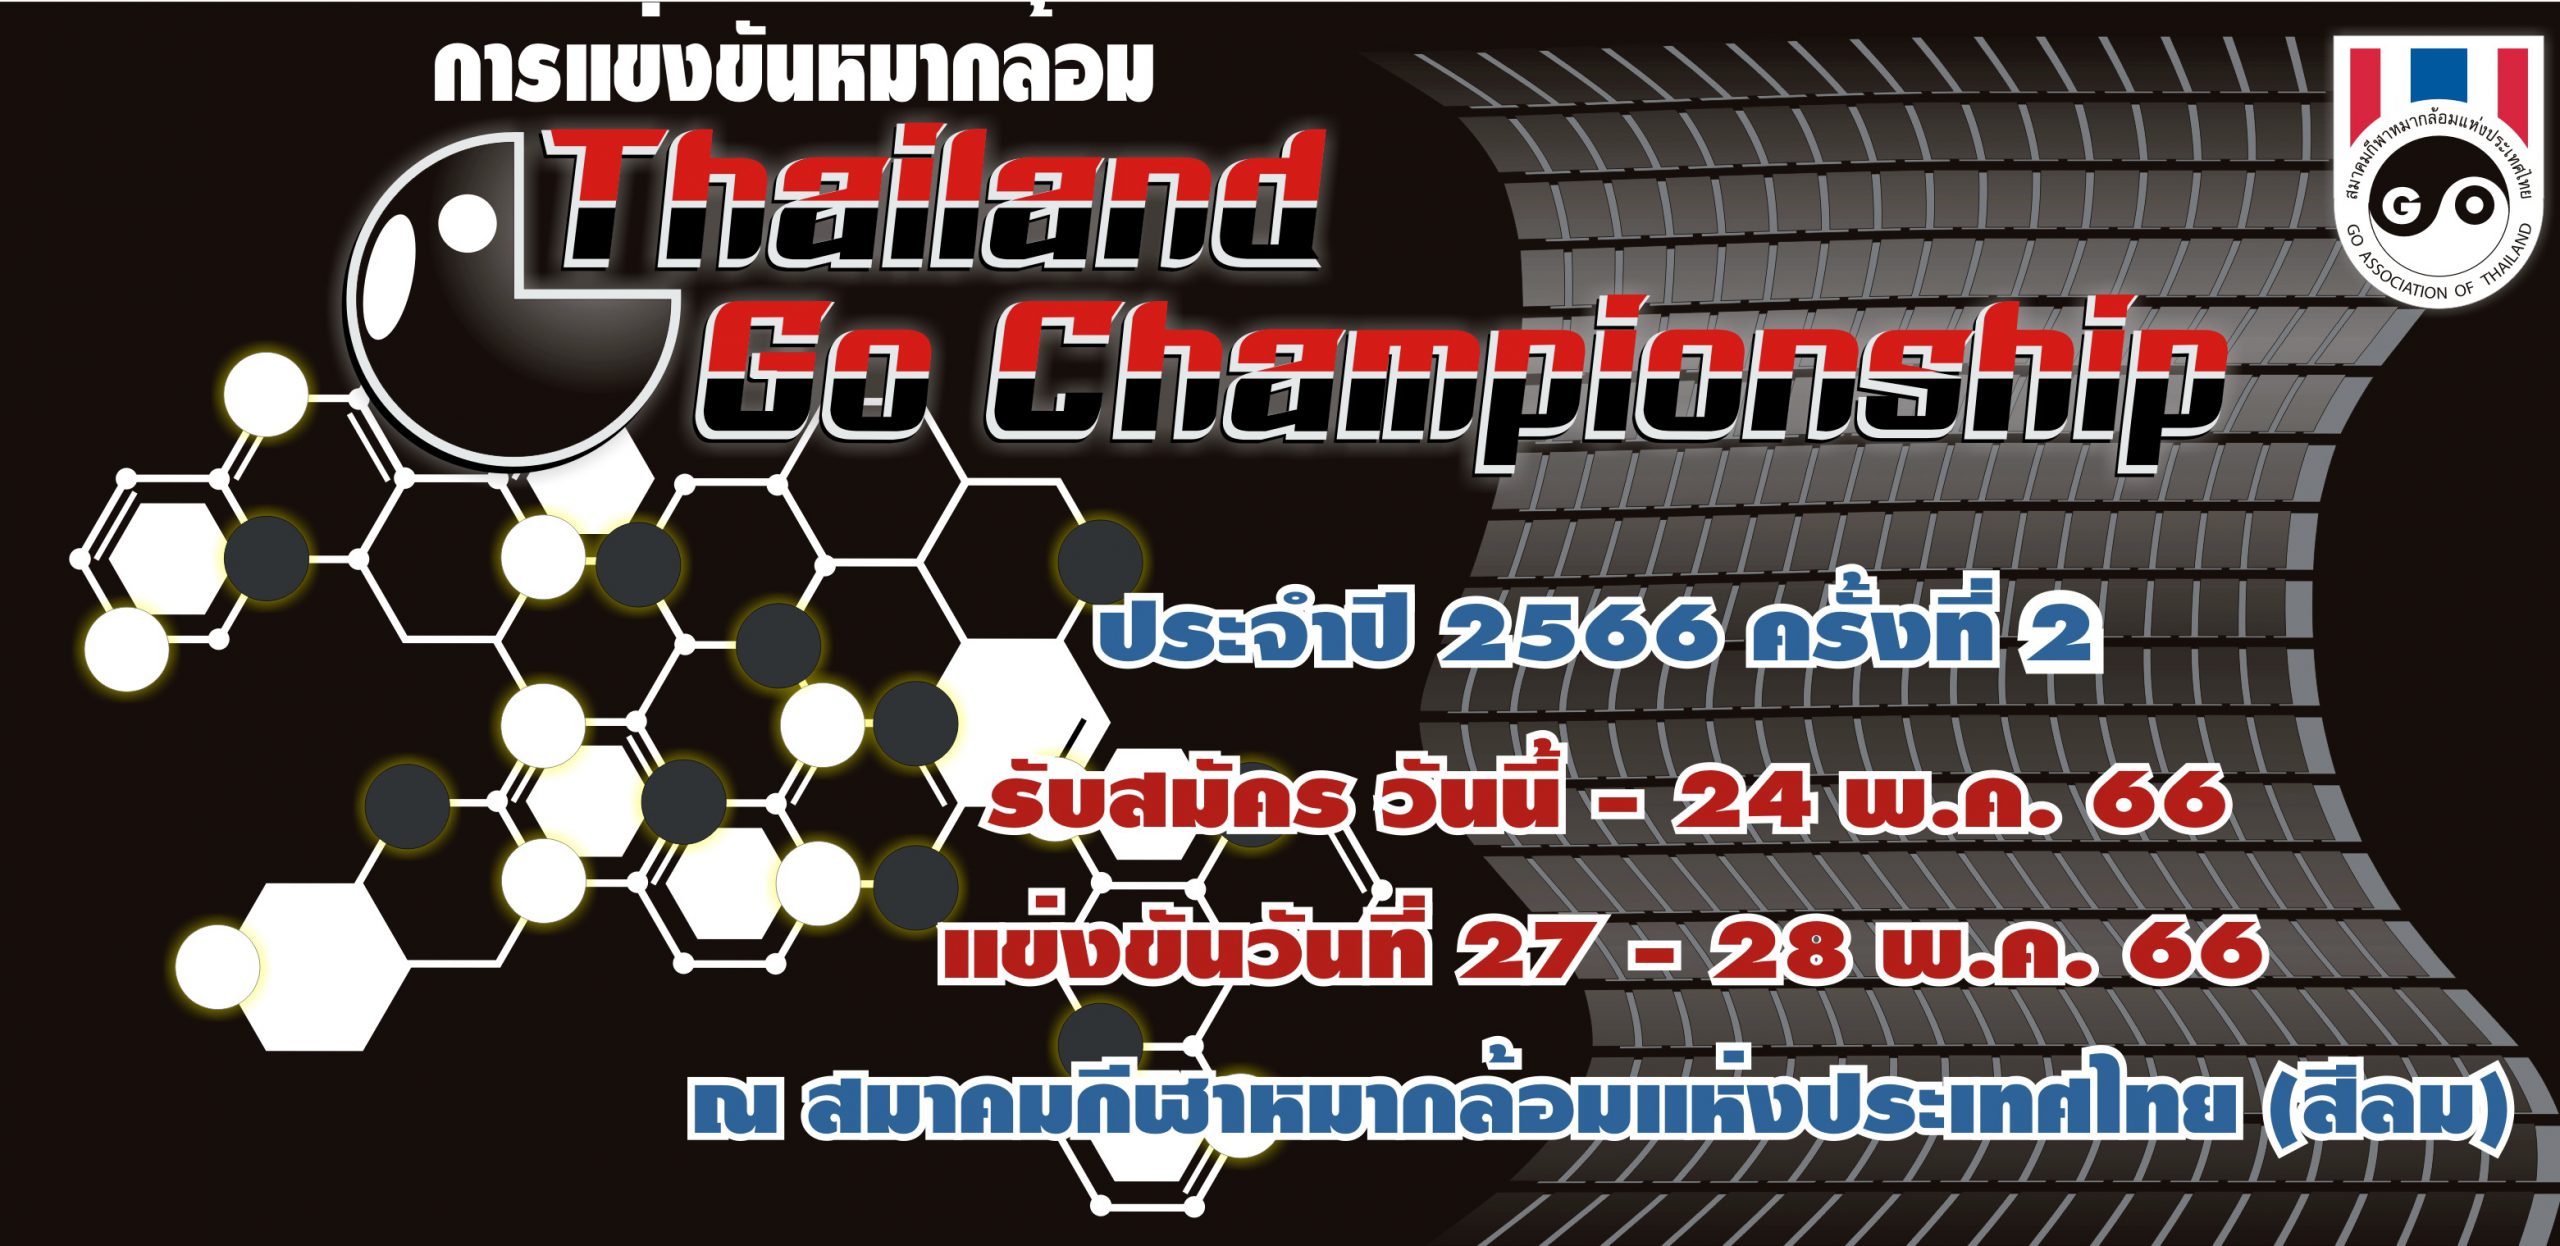 รับสมัครการแข่งขัน Thailand Go Championship ประจำปี 2566 ครั้งที่ 2